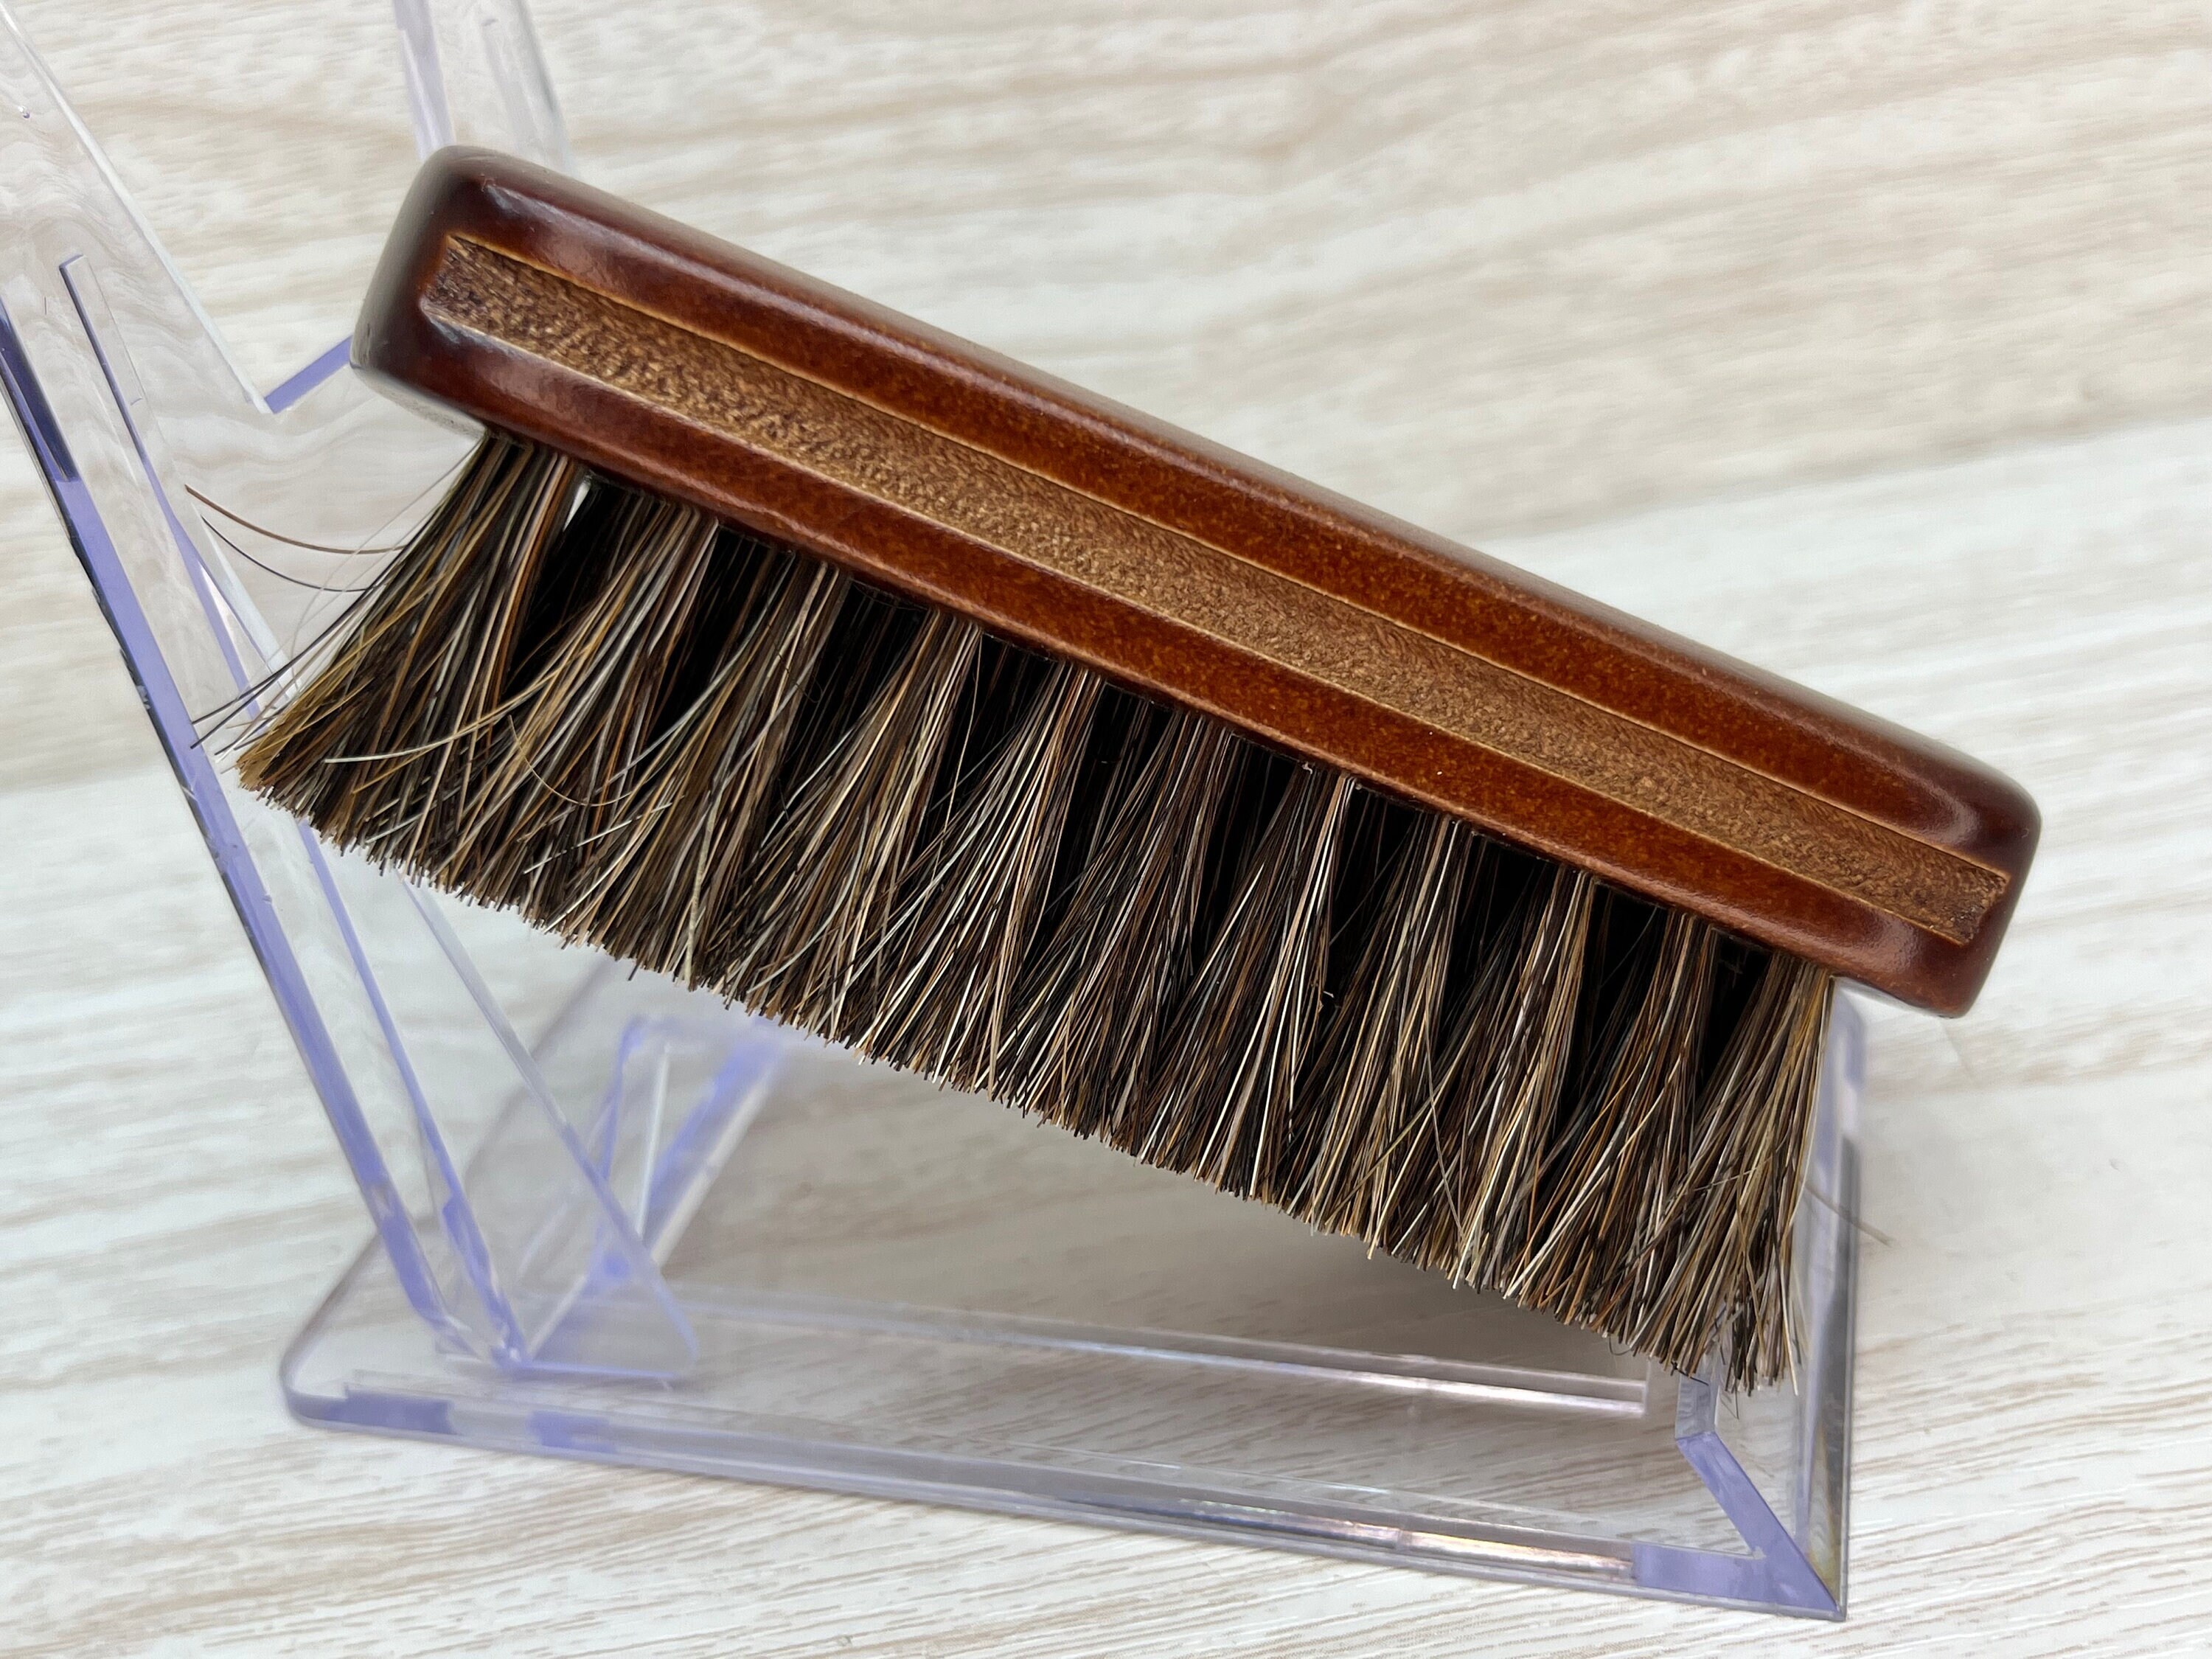 Round Shaker Style Brush Wood Handle, Horse Hair Brush Farmhouse Decor 